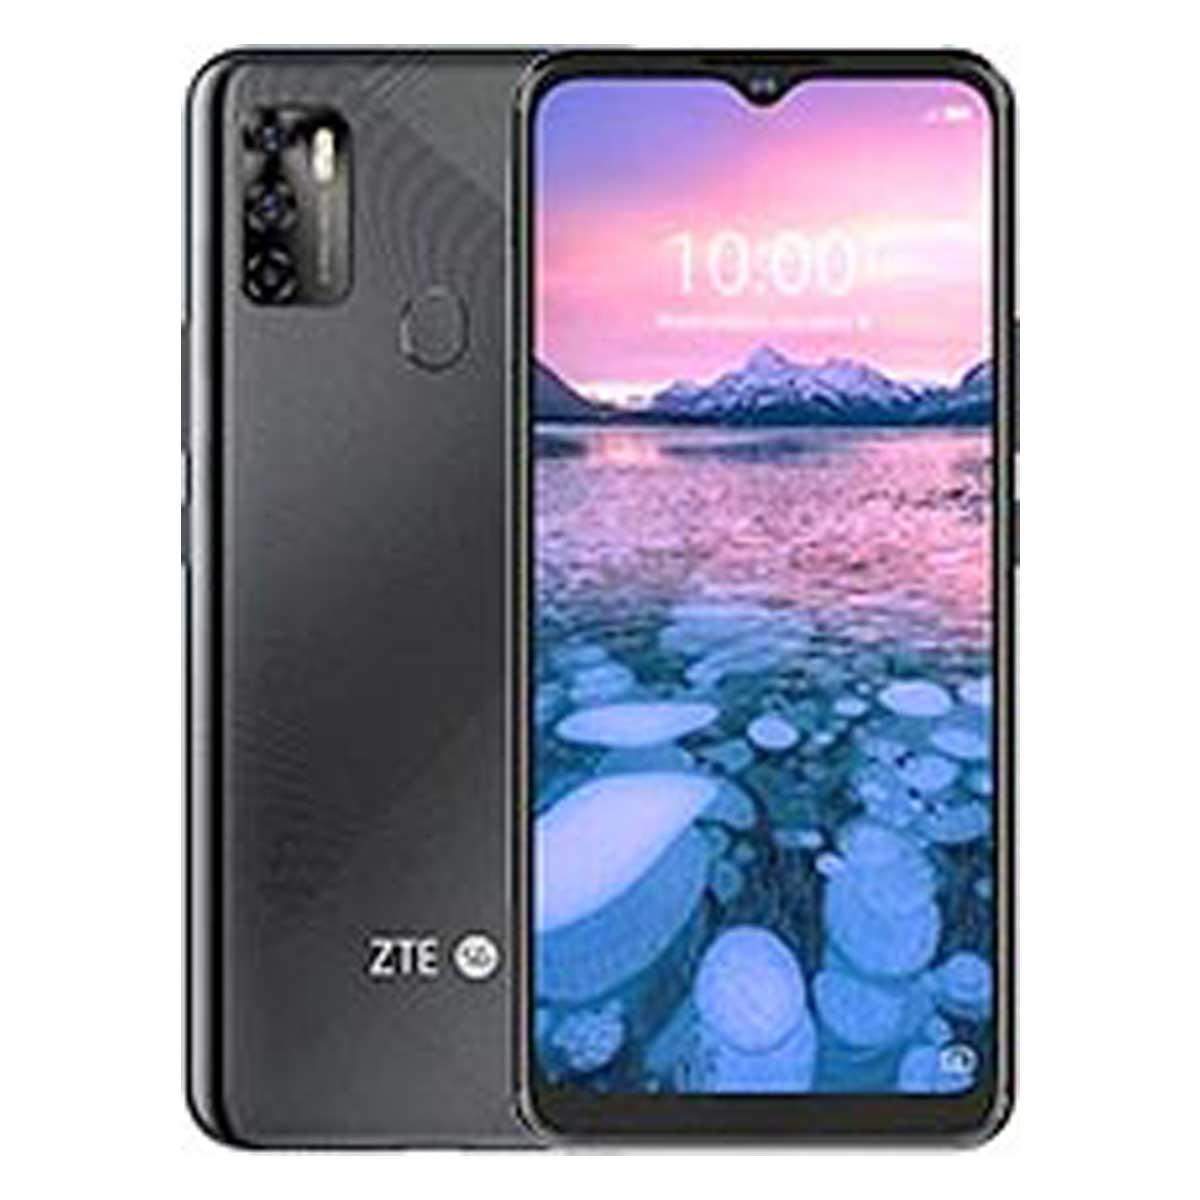 ZTE Blade 20 Pro 5G स्मार्टफोन 64MP कैमरा, 4000mAh की बैटरी, 4K वीडियो रिकॉर्डिंग सपोर्ट के साथ,जानें और फीचर्स